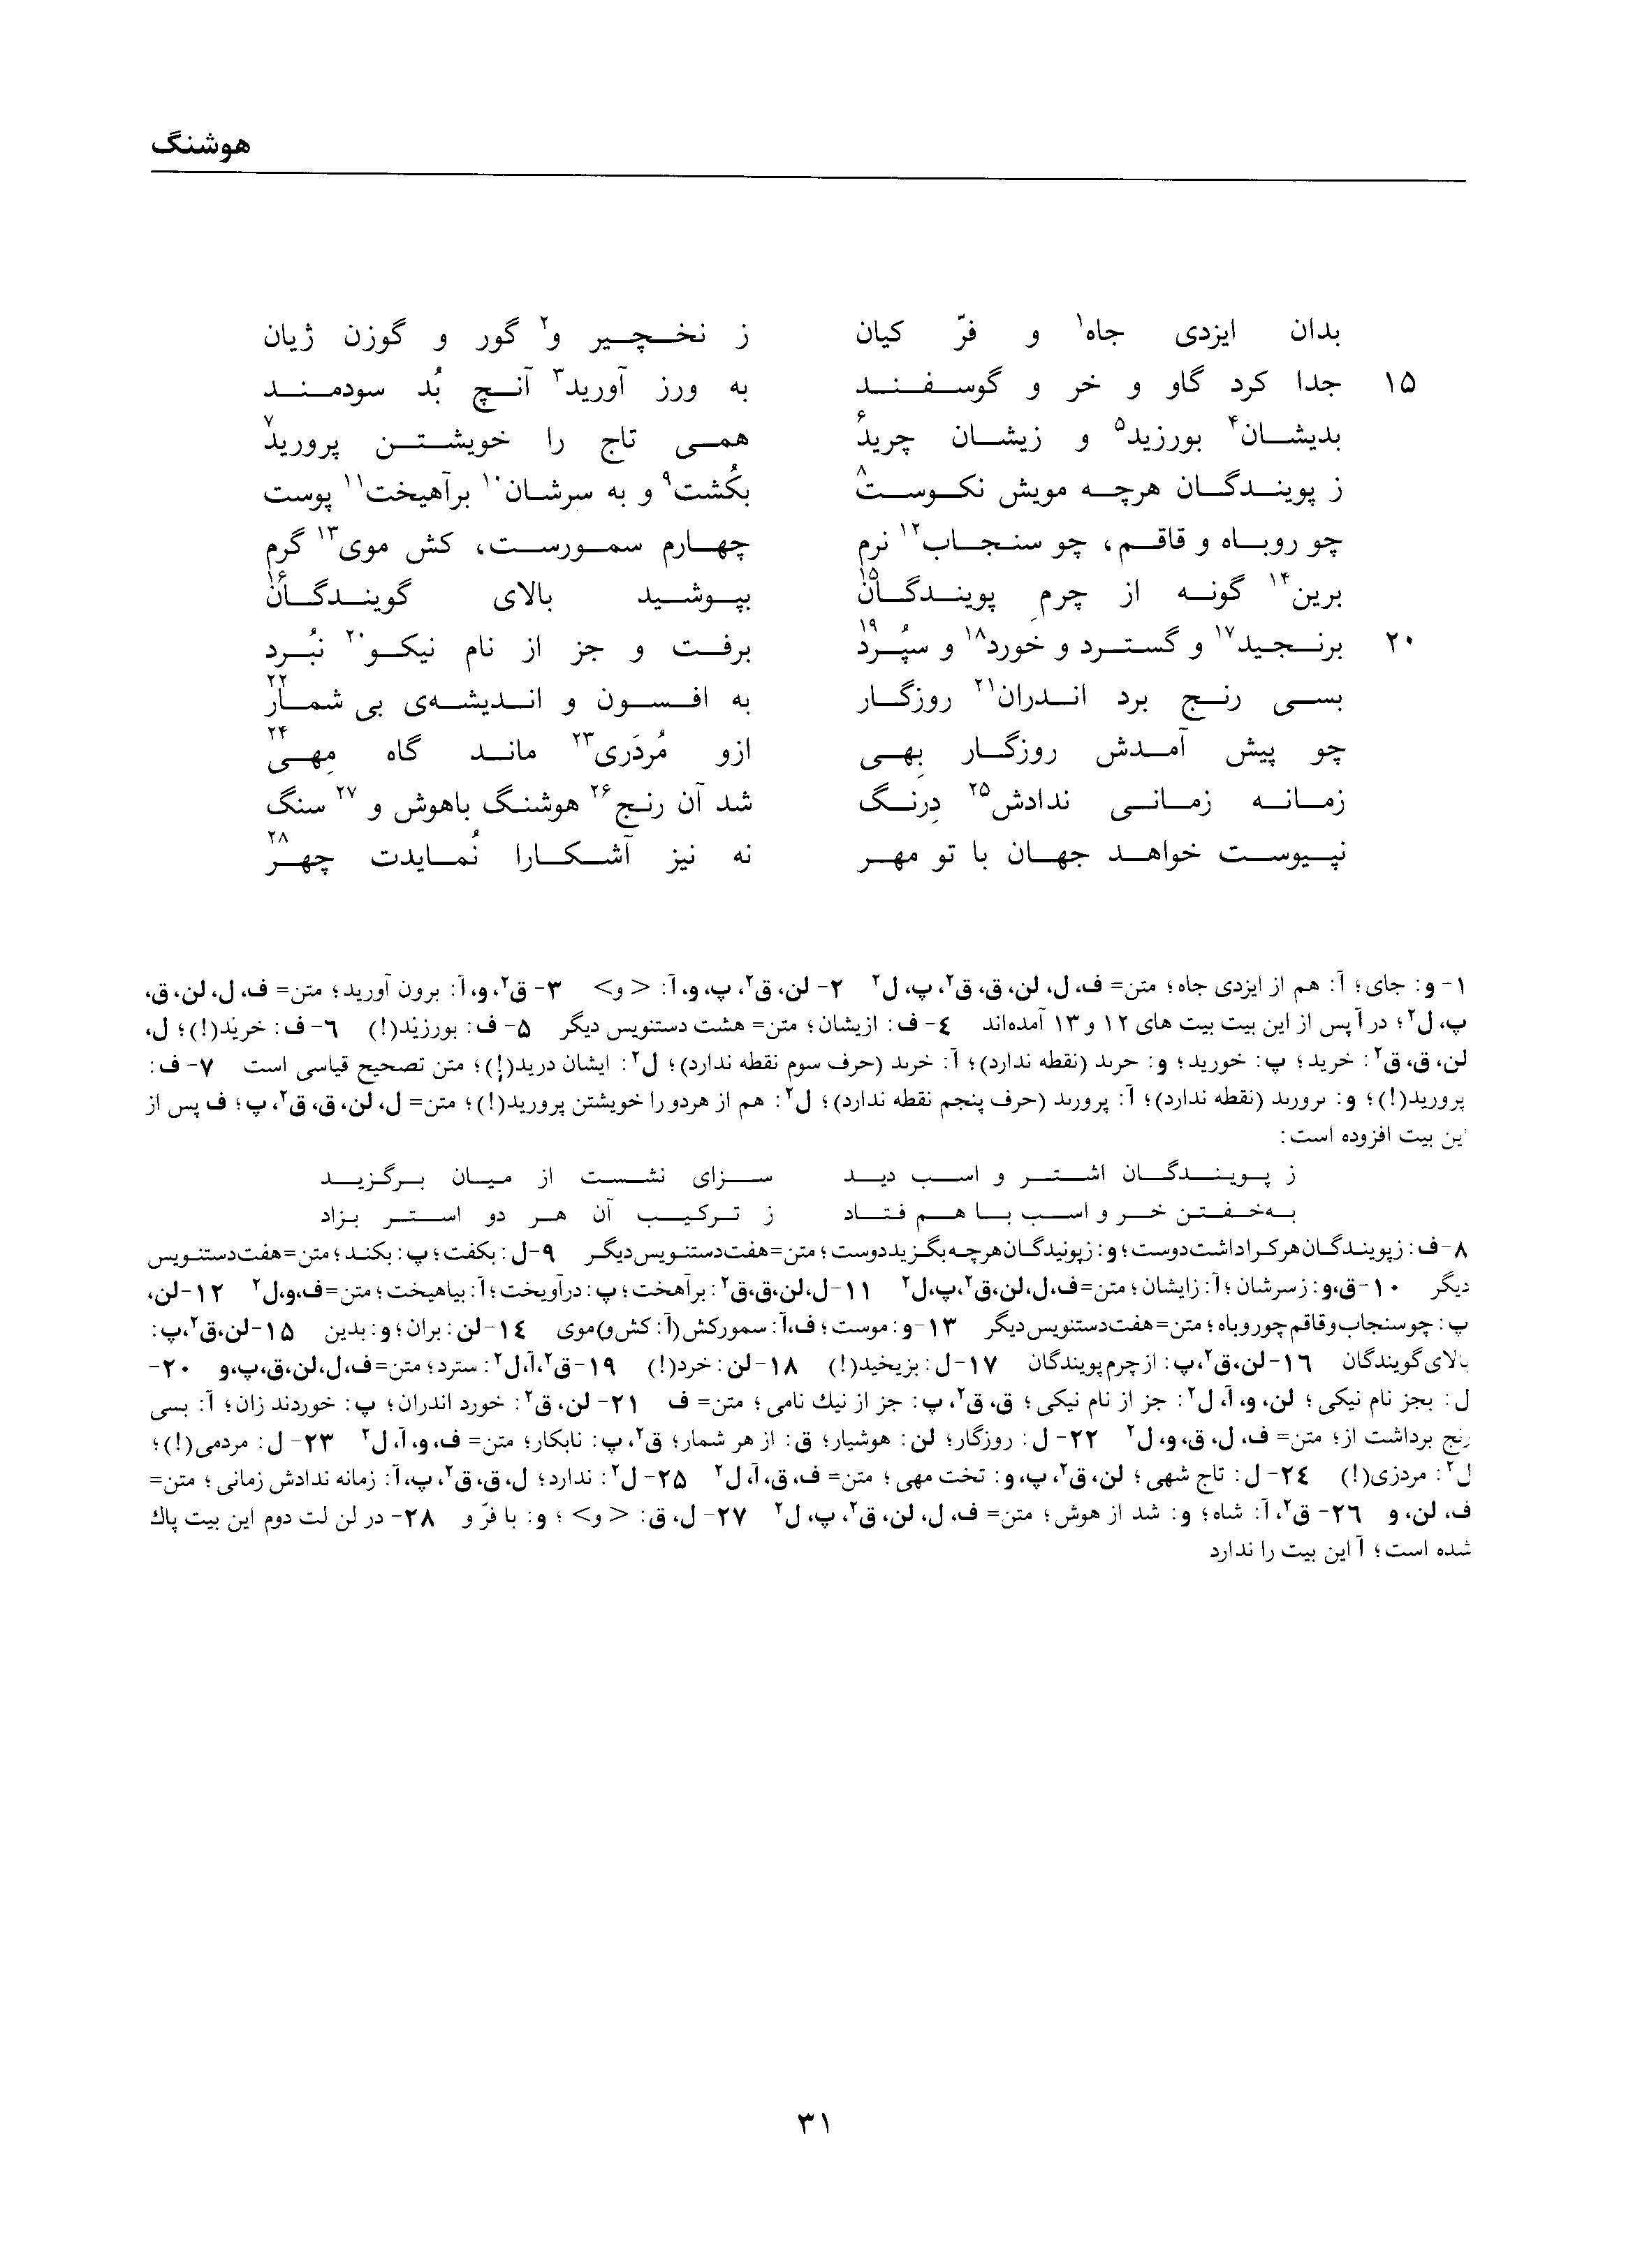 vol. 1, p. 31